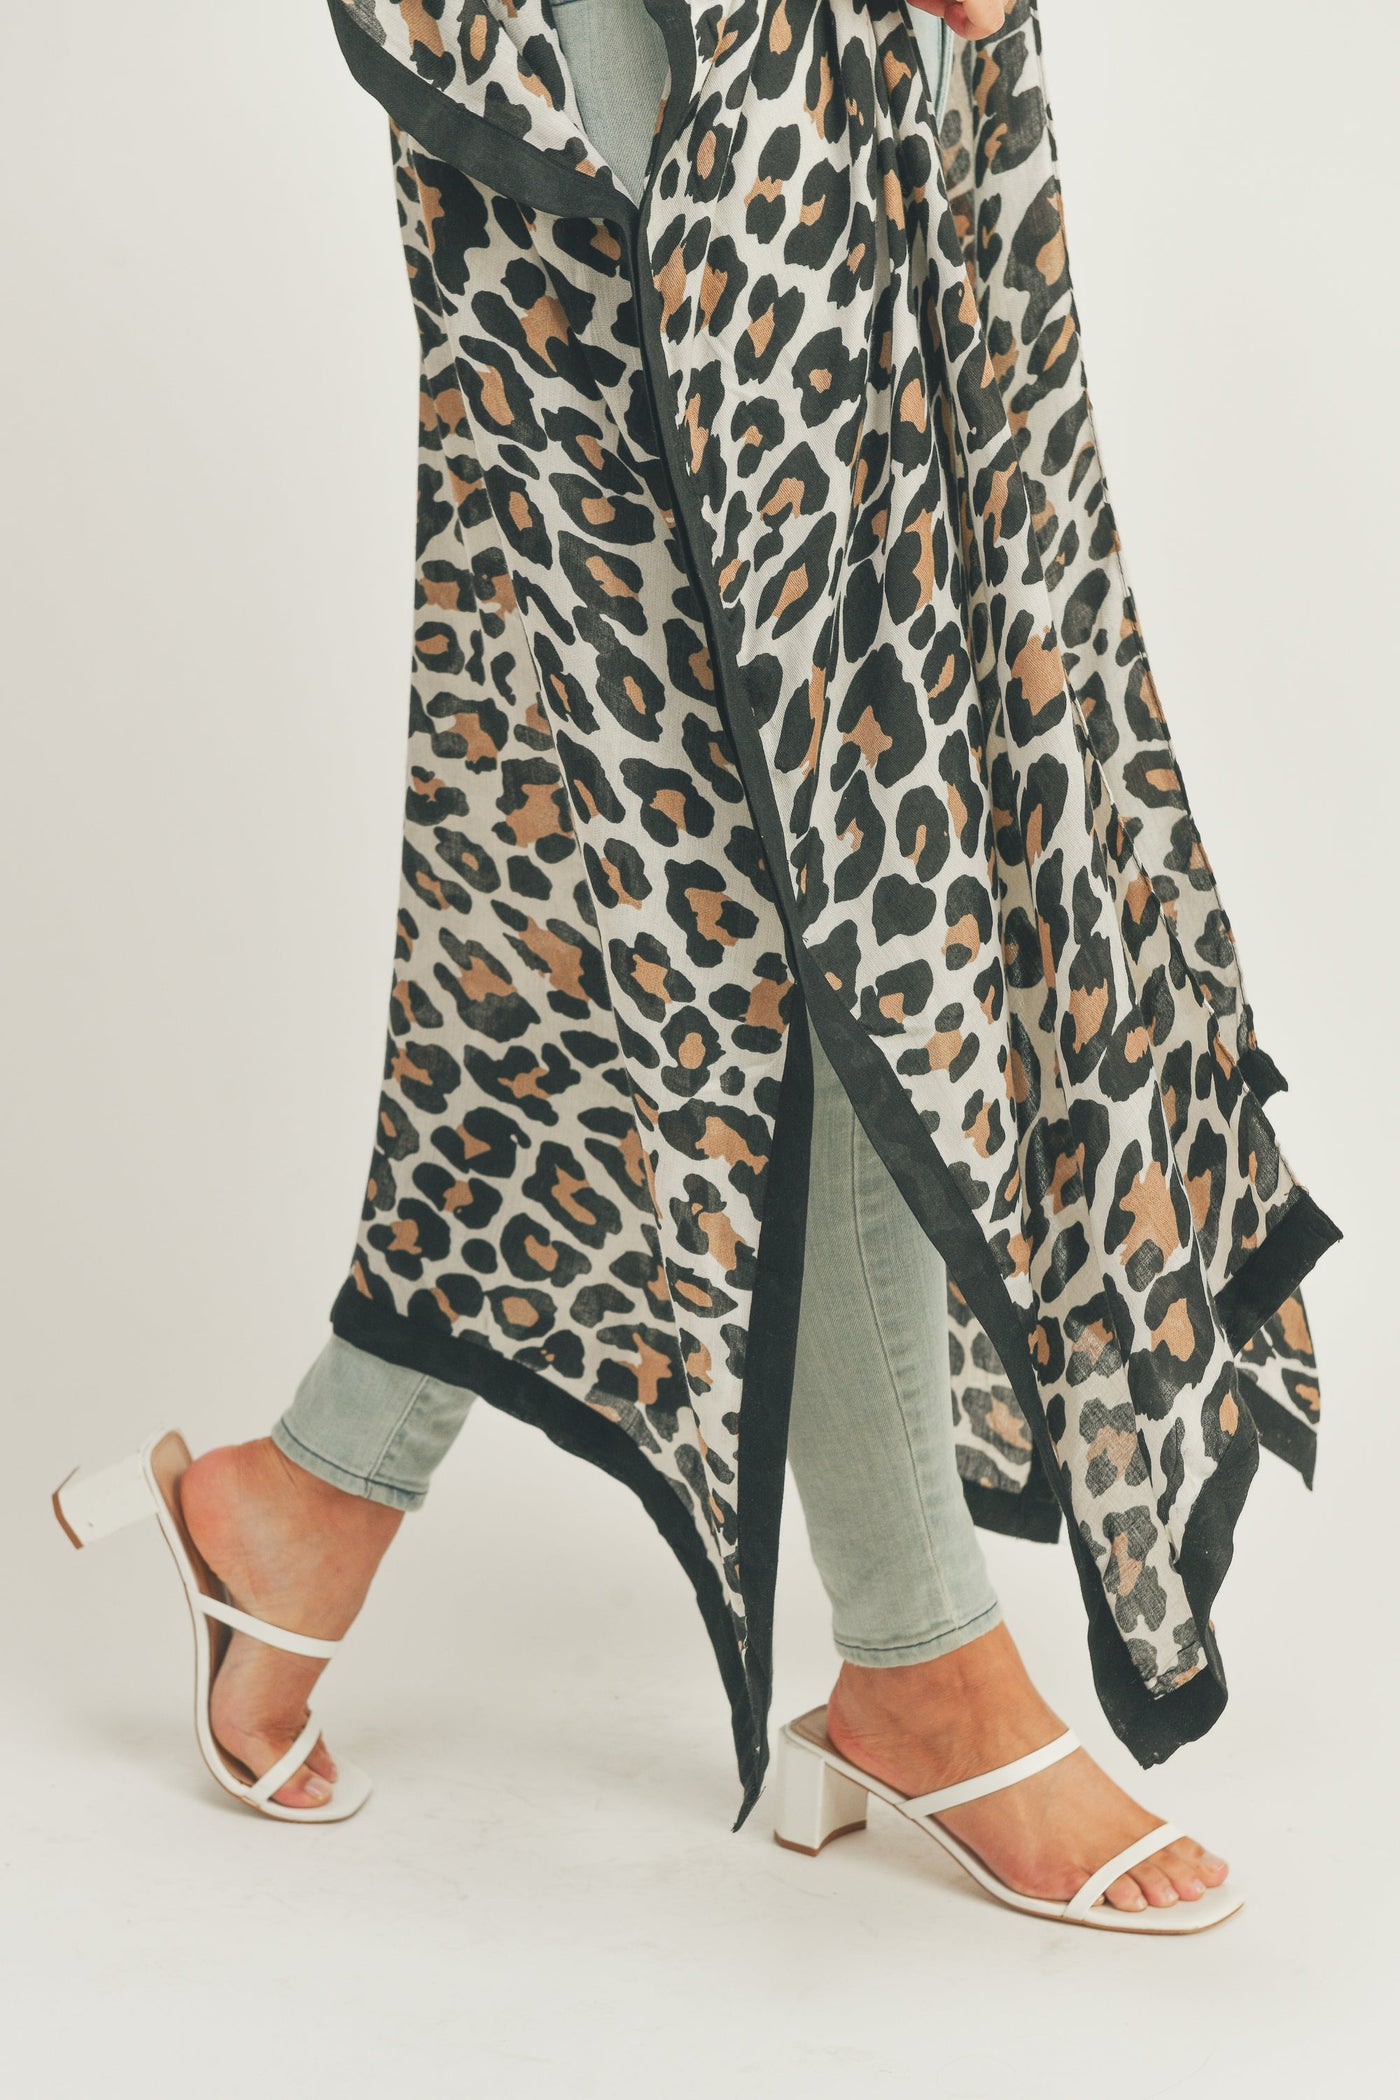 MS0295(BE) Long Leopard Kimono